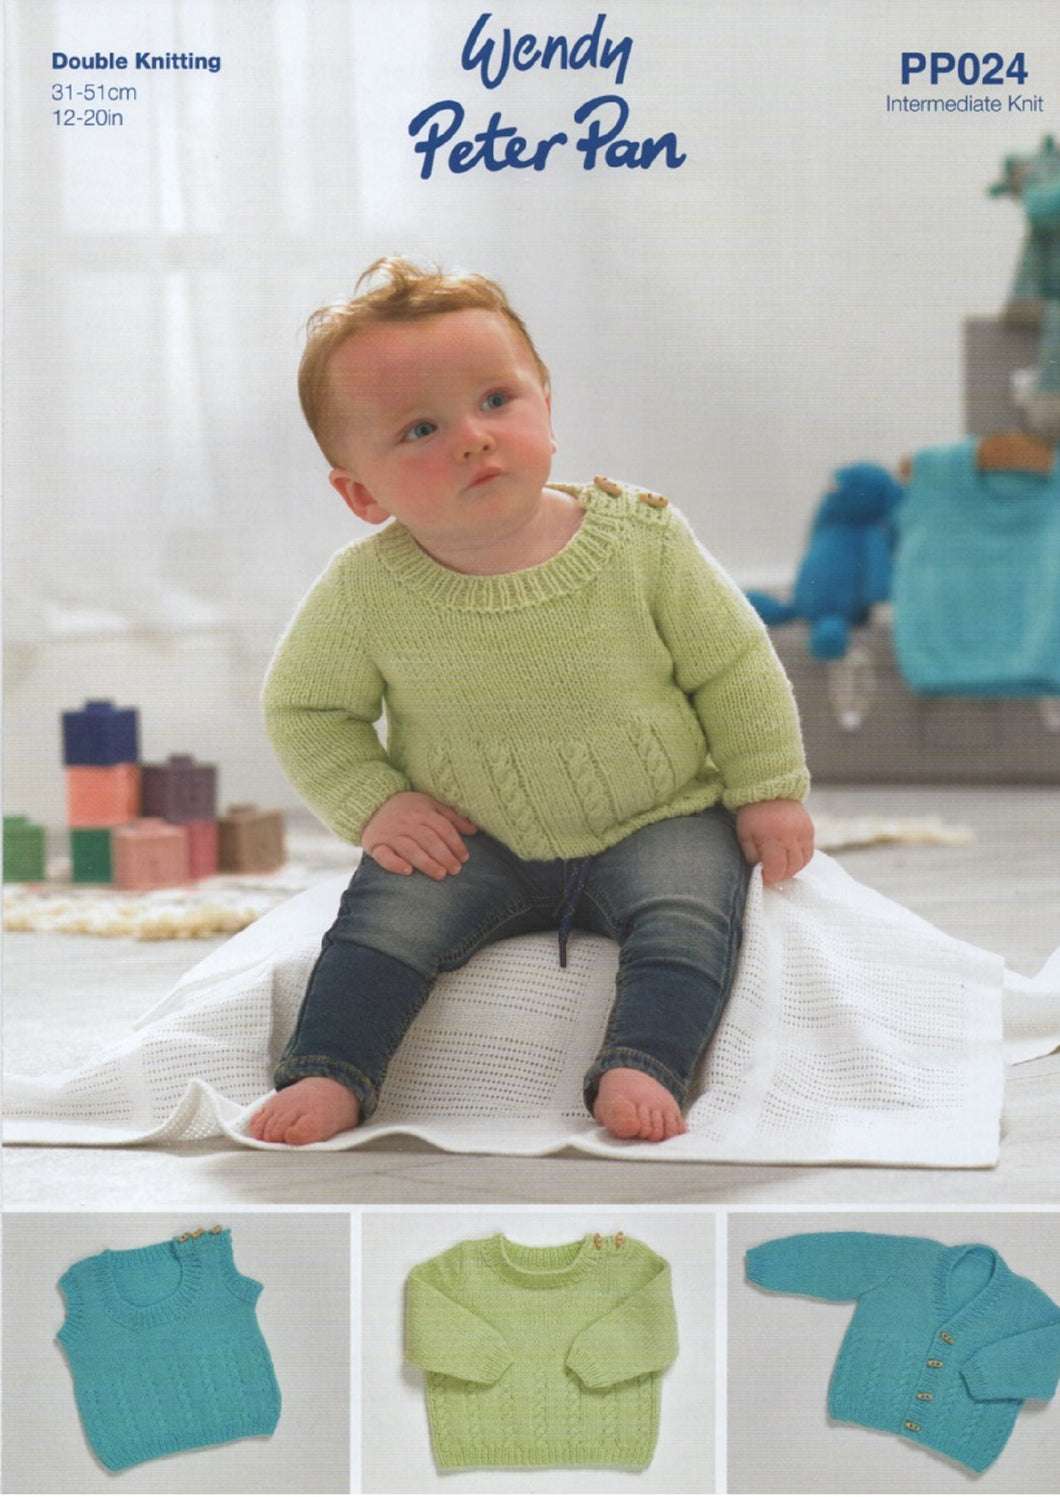 Wendy Peter Pan Baby DK Knitting Pattern – Sweater,Slipover & Cardigan (PP024)